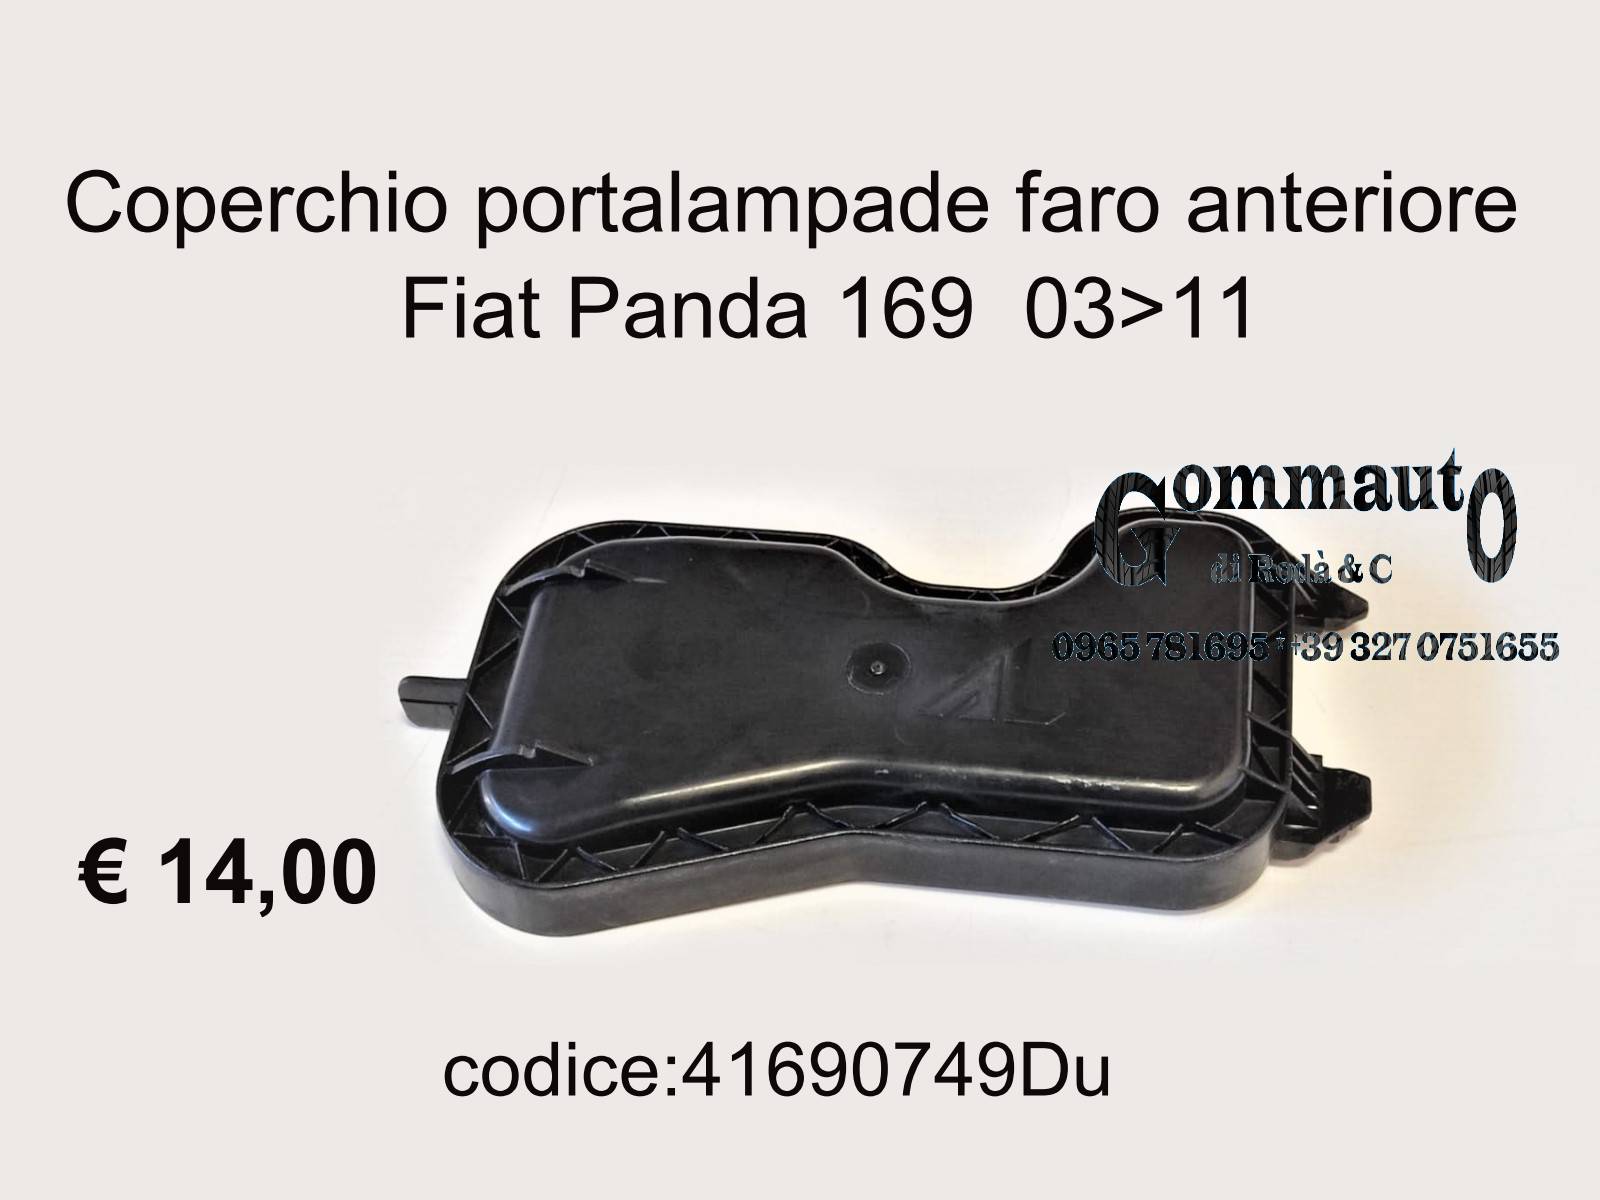 Coperchio portalampade faro Fiat Panda